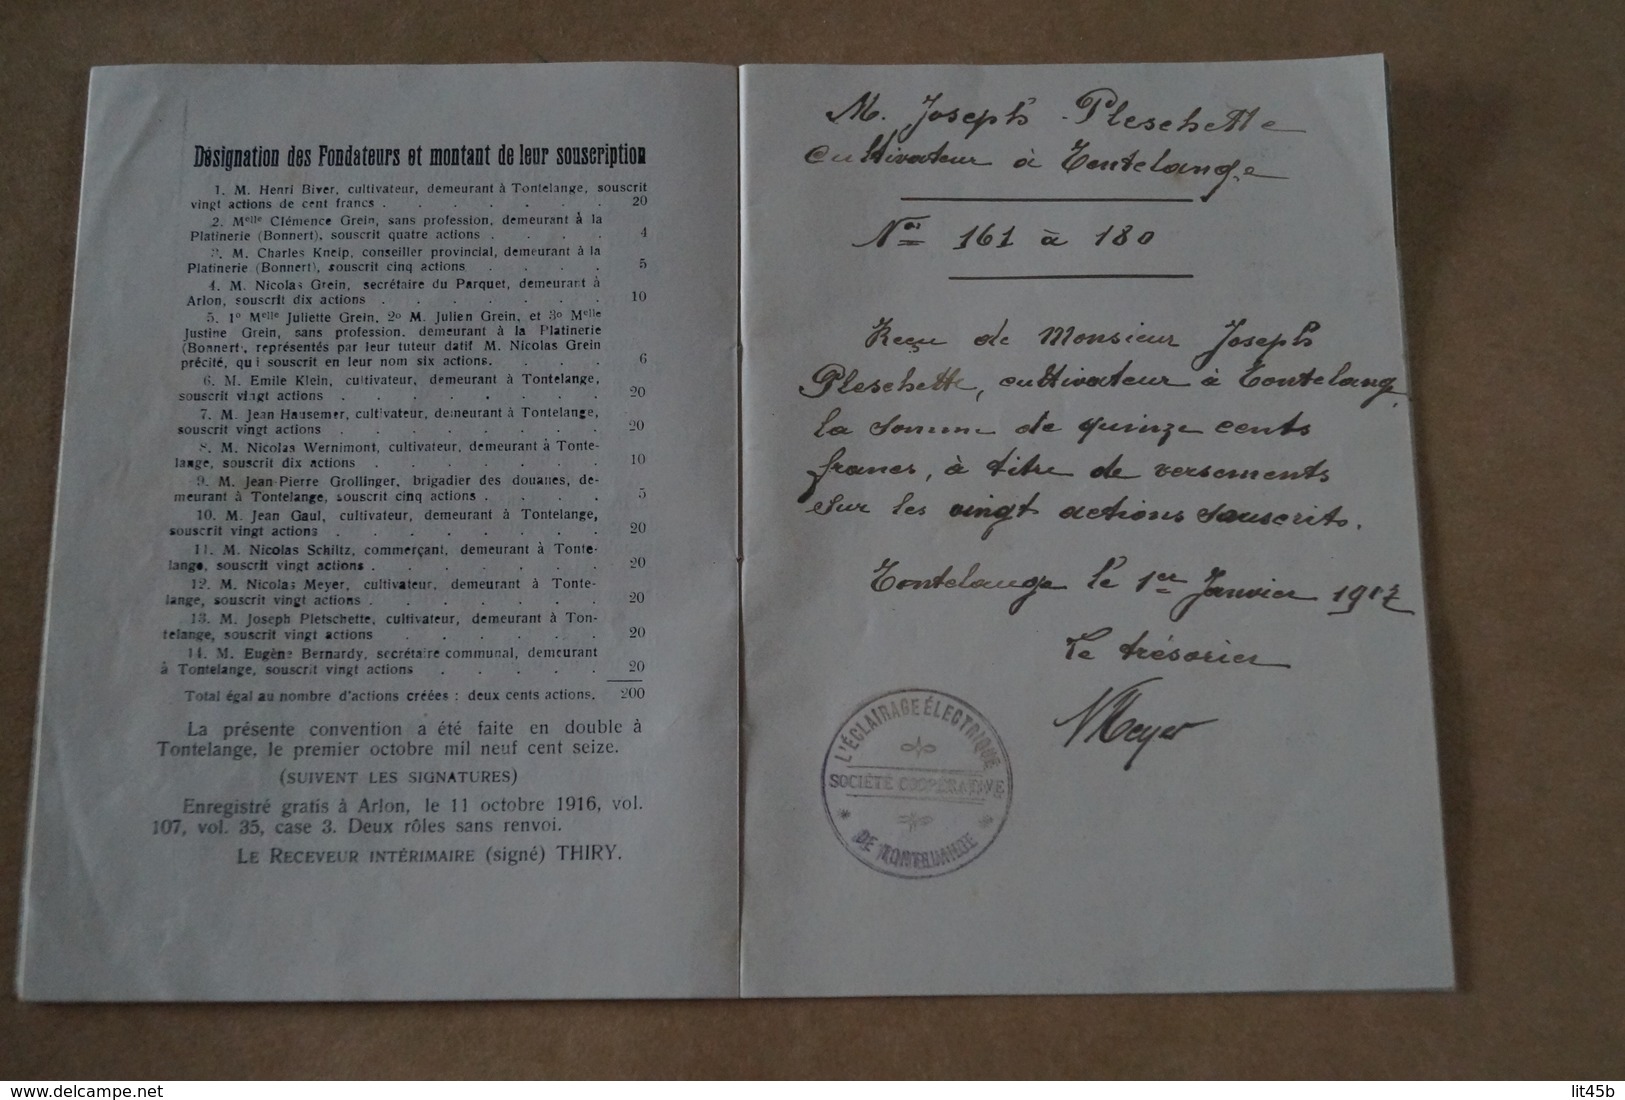 éclairage électrique de Tontelange,avec reçu manuscrit Joseph Pleschette 1917,dimensions 18,5 Cm./13 Cm.